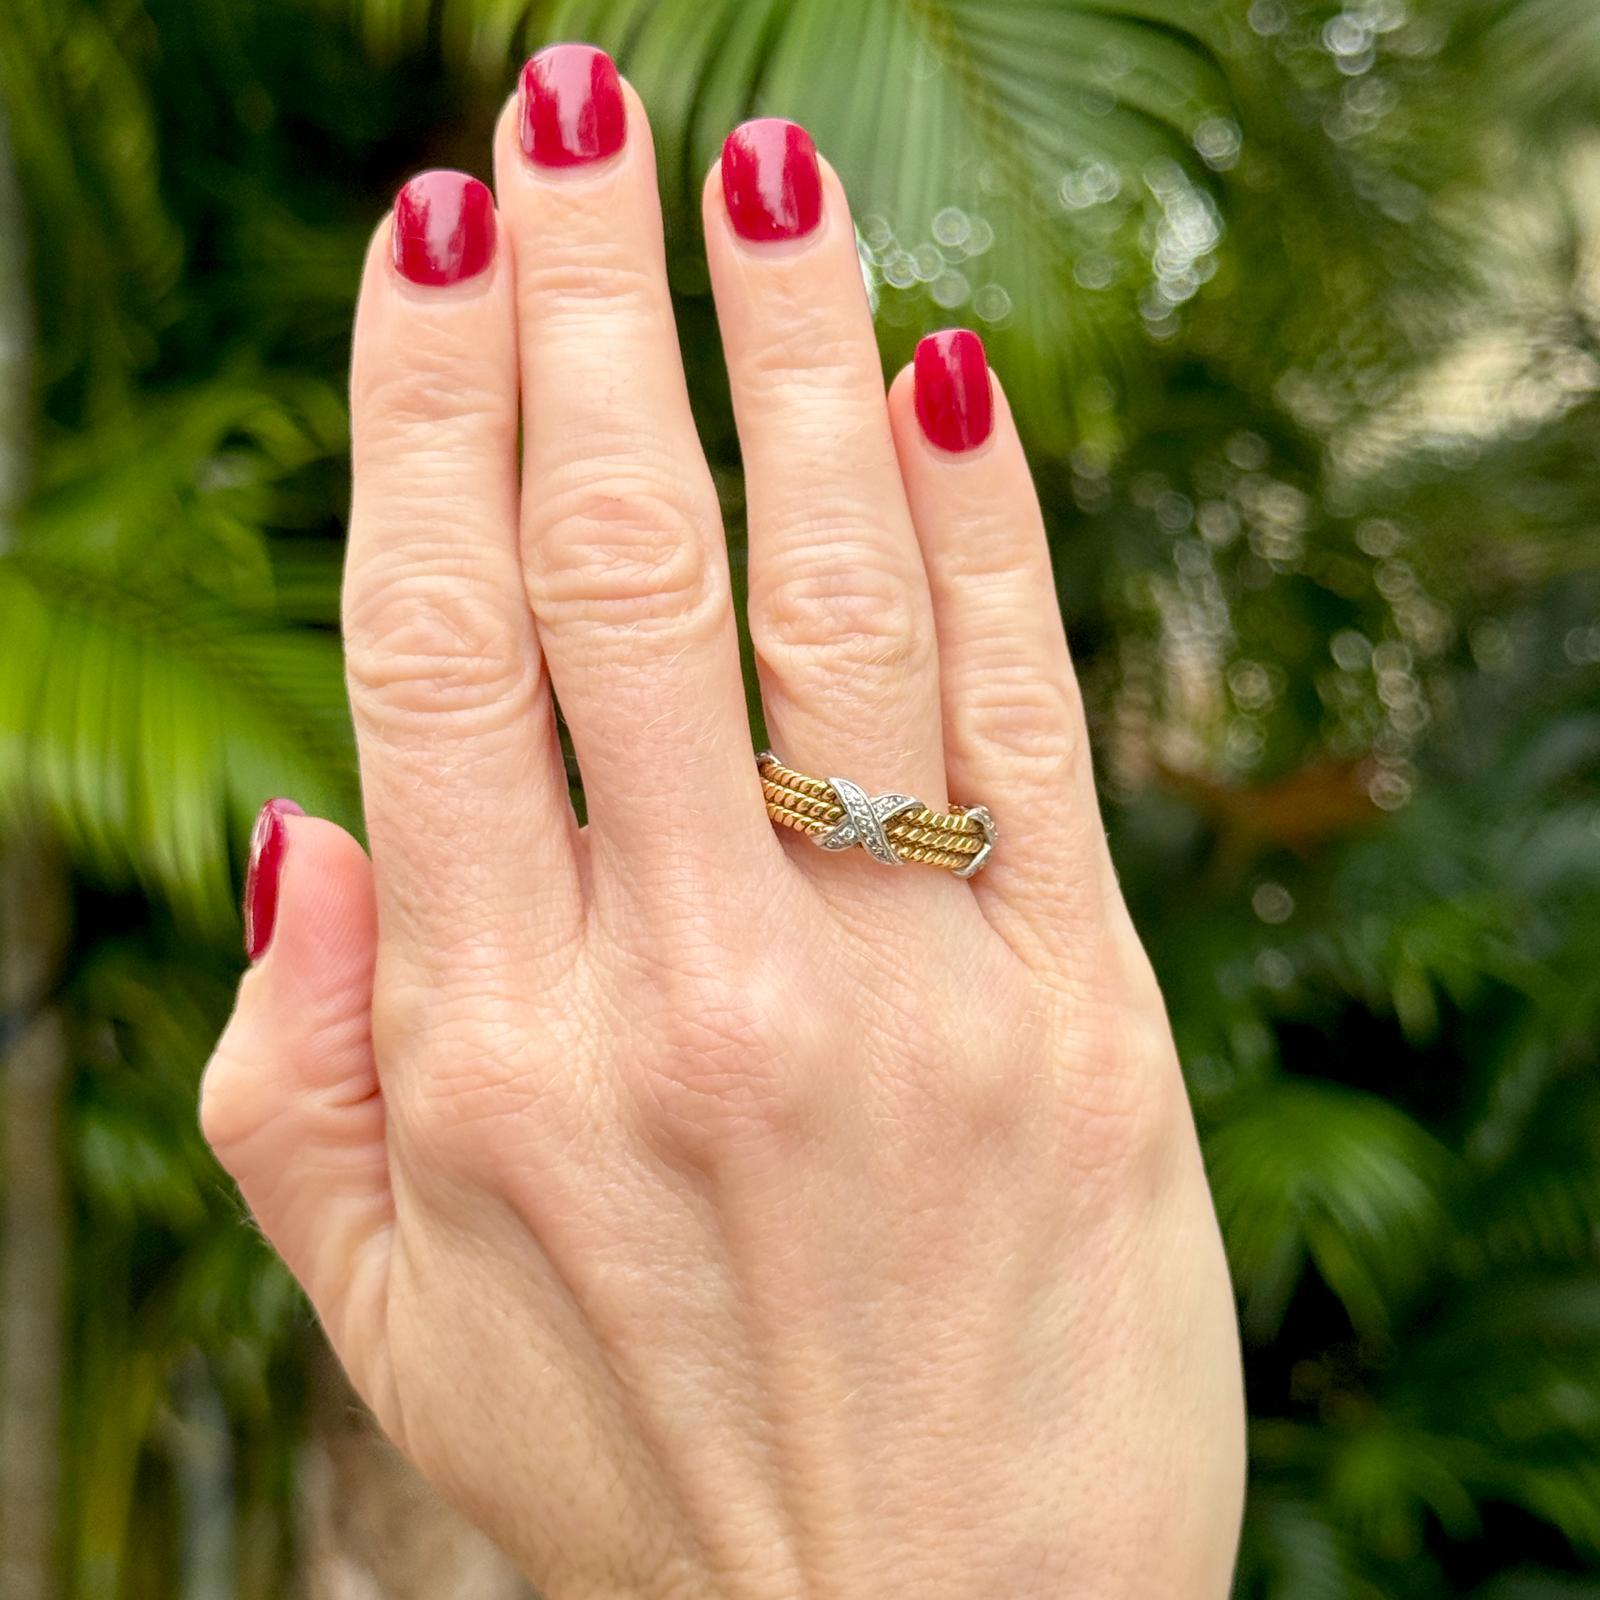 Tiffany & Co. Schlumberger Diamant X Ring aus 18 Karat Gelbgold. Die Diamanten wiegen ca. 0,28 CTW und sind in der Farbe F-G und der Reinheit VS eingestuft. Das Band ist Größe 8 und misst 6,6 mm in der Breite. Signiert Tiffany Schlumberger 18K. Wird